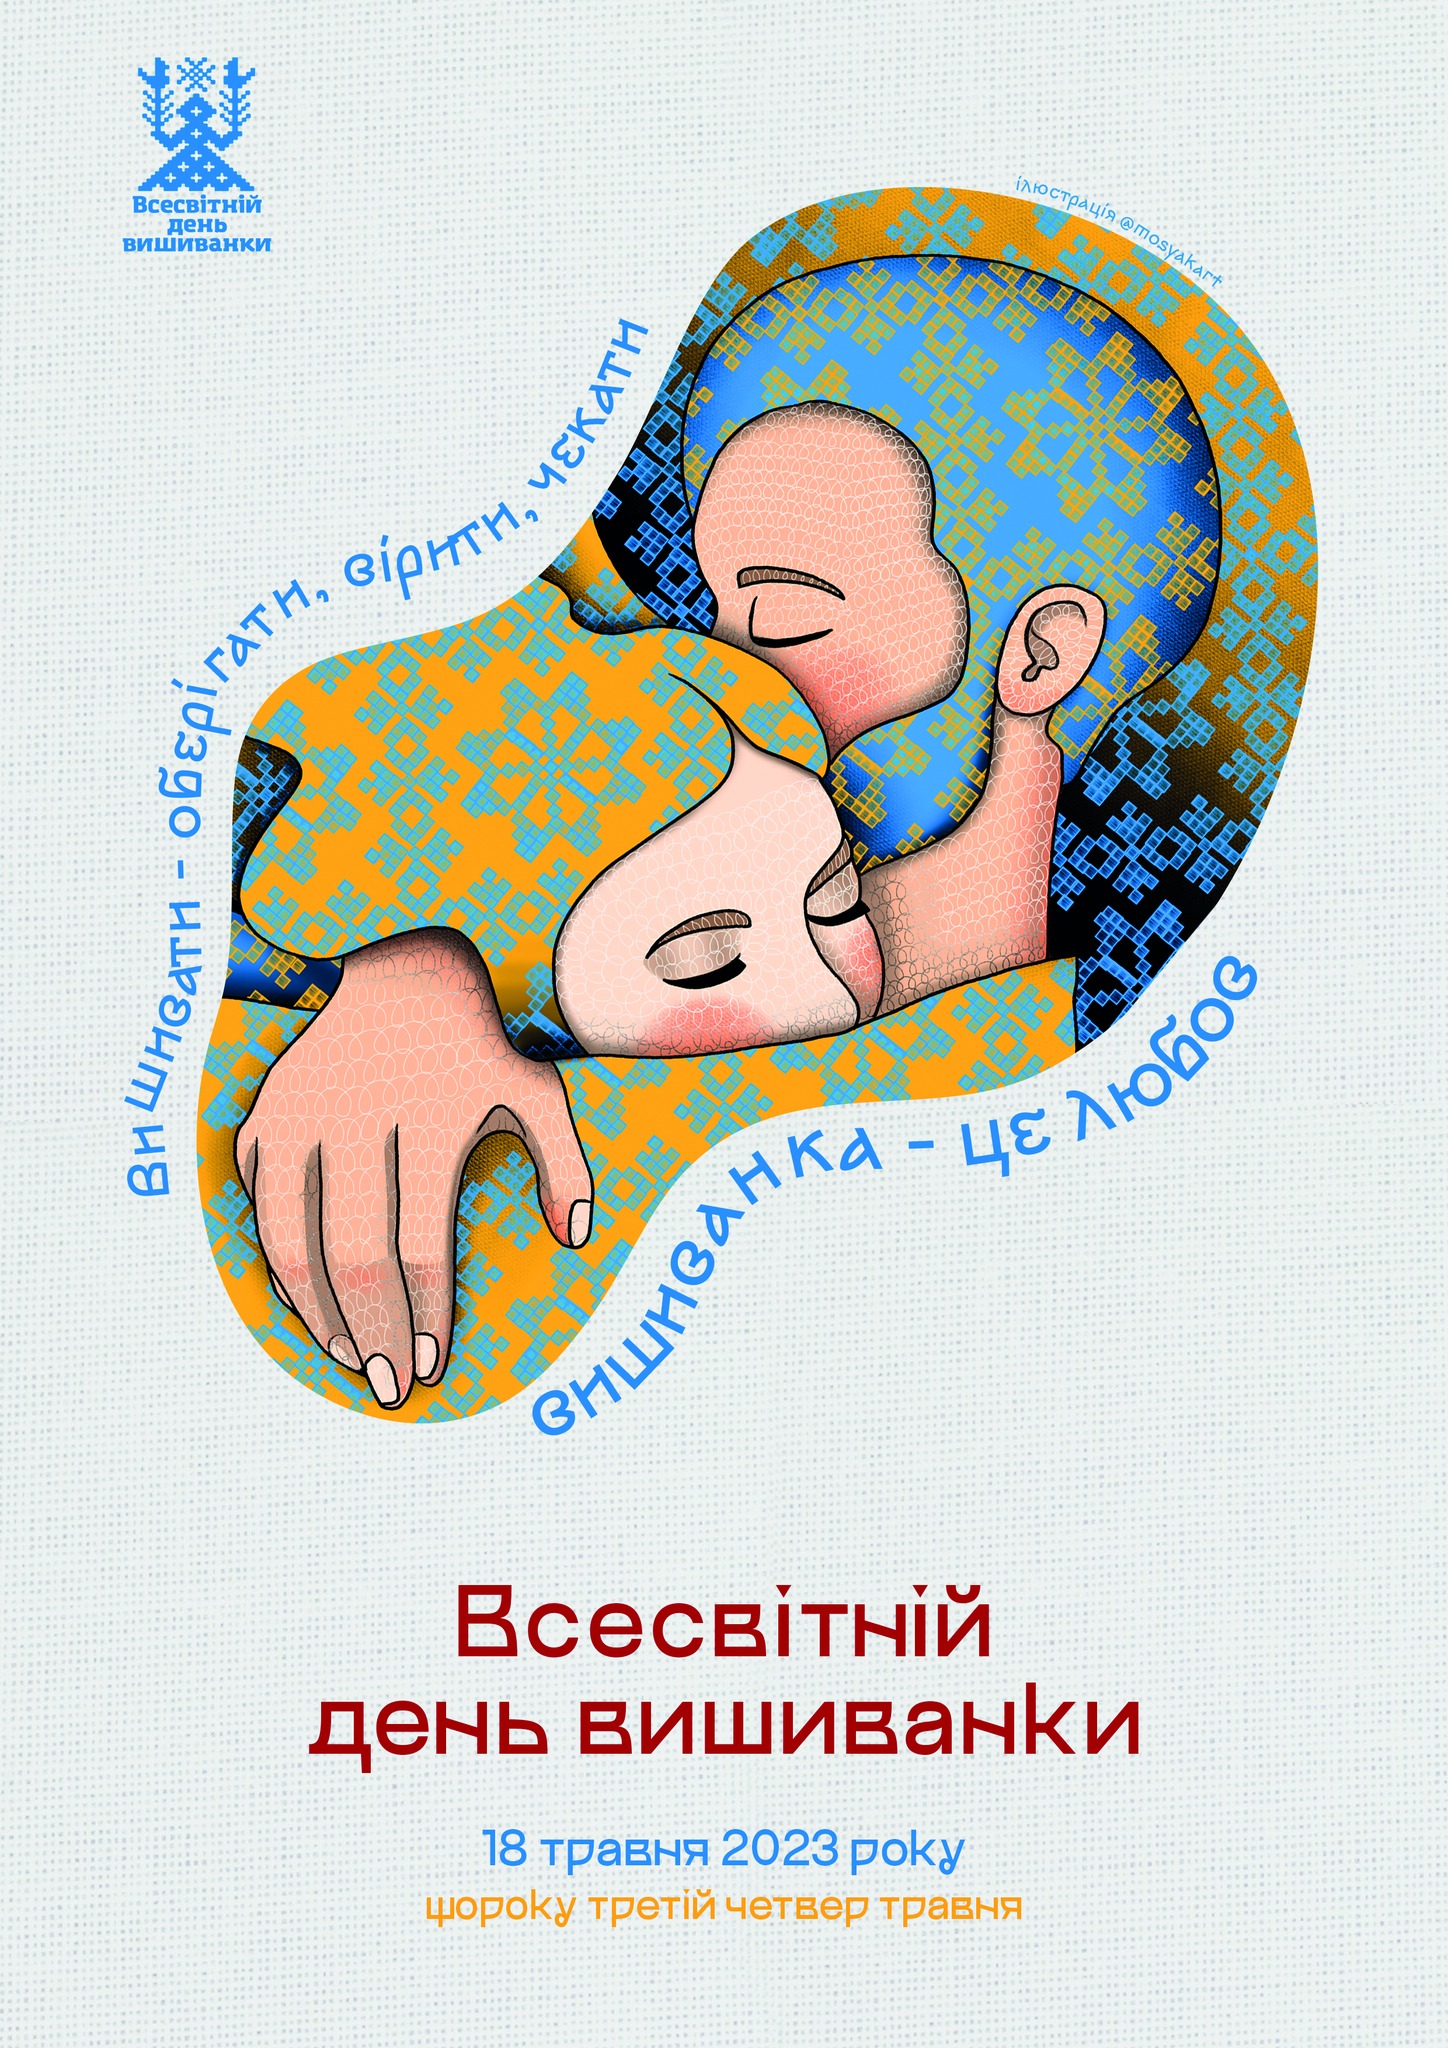 Офіційний постер Дня вишиванки-2023. Фото: facebook.com/lesiavoroniuk/